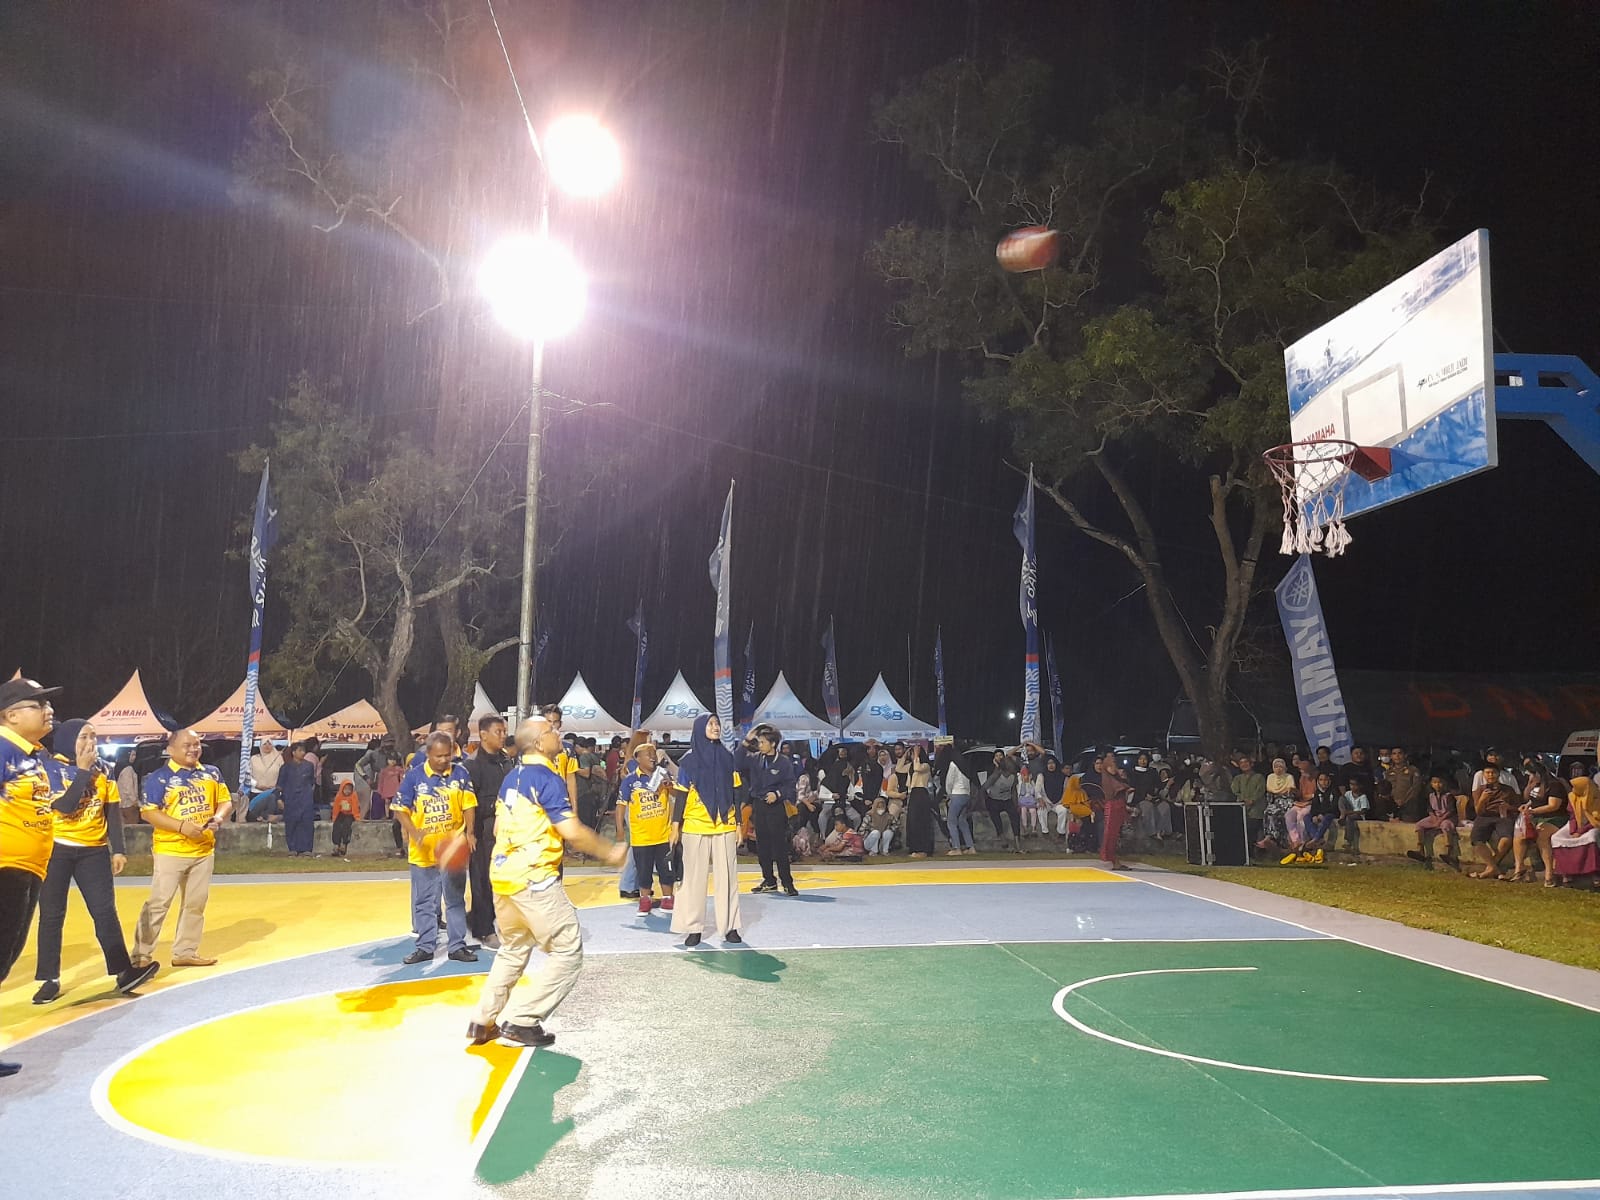 Diwarnai Hujan, Opening Ceremony Turnamen Basketball Bupati Cup Bateng 2022 Meriah